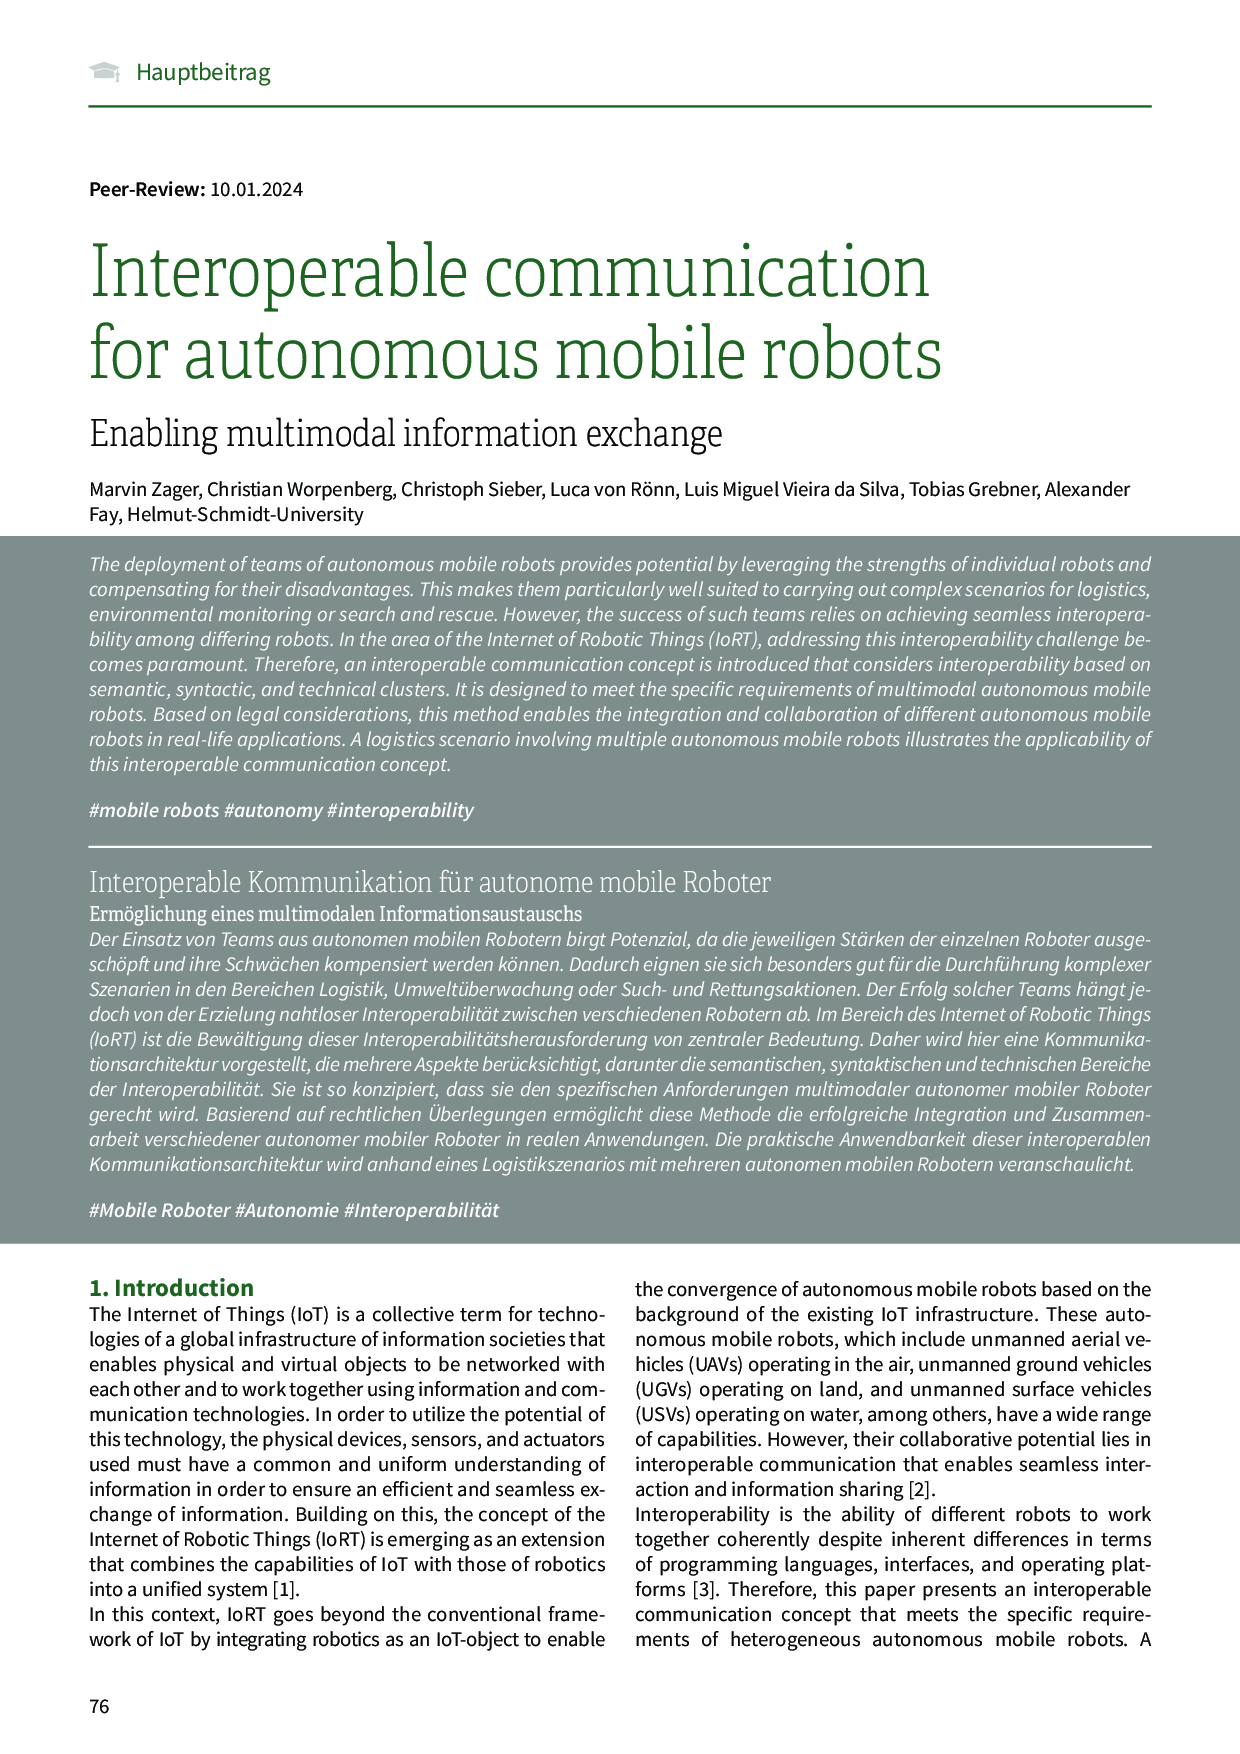 Interoperable communication for autonomous mobile robots